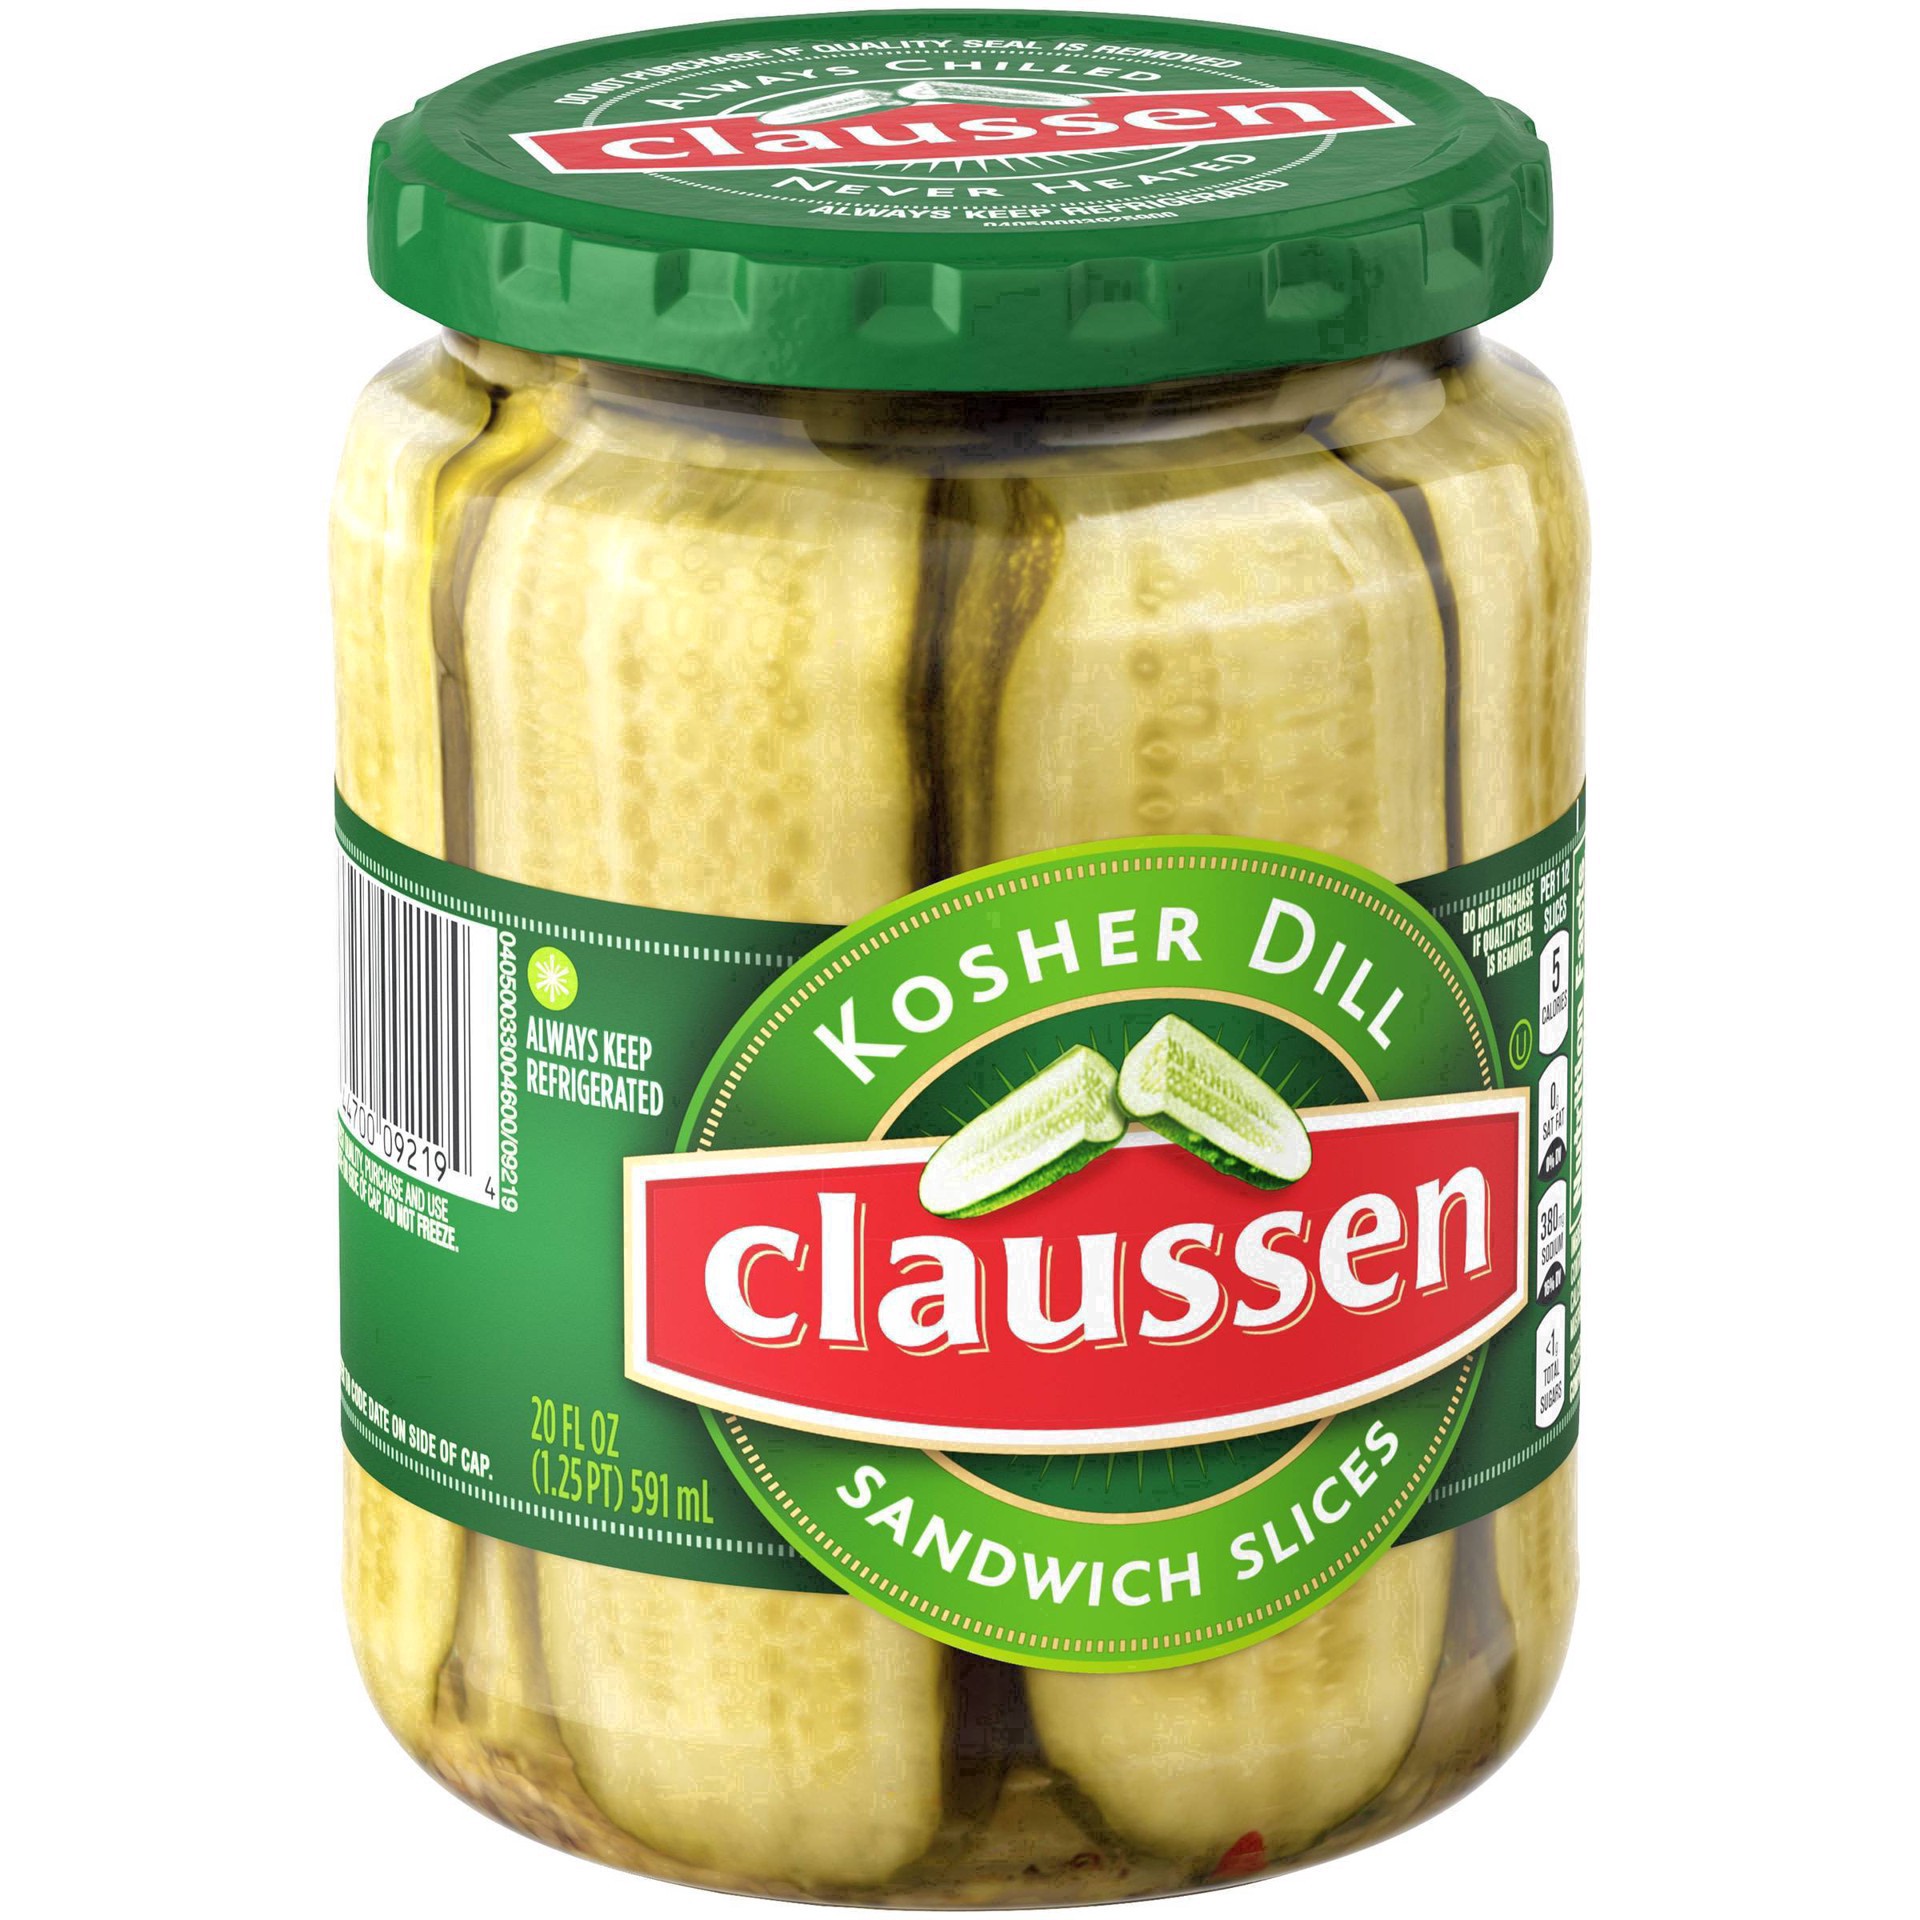 slide 50 of 144, Claussen Kosher Dill Pickle Sandwich Slices, 20 fl. oz. Jar, 20 fl oz